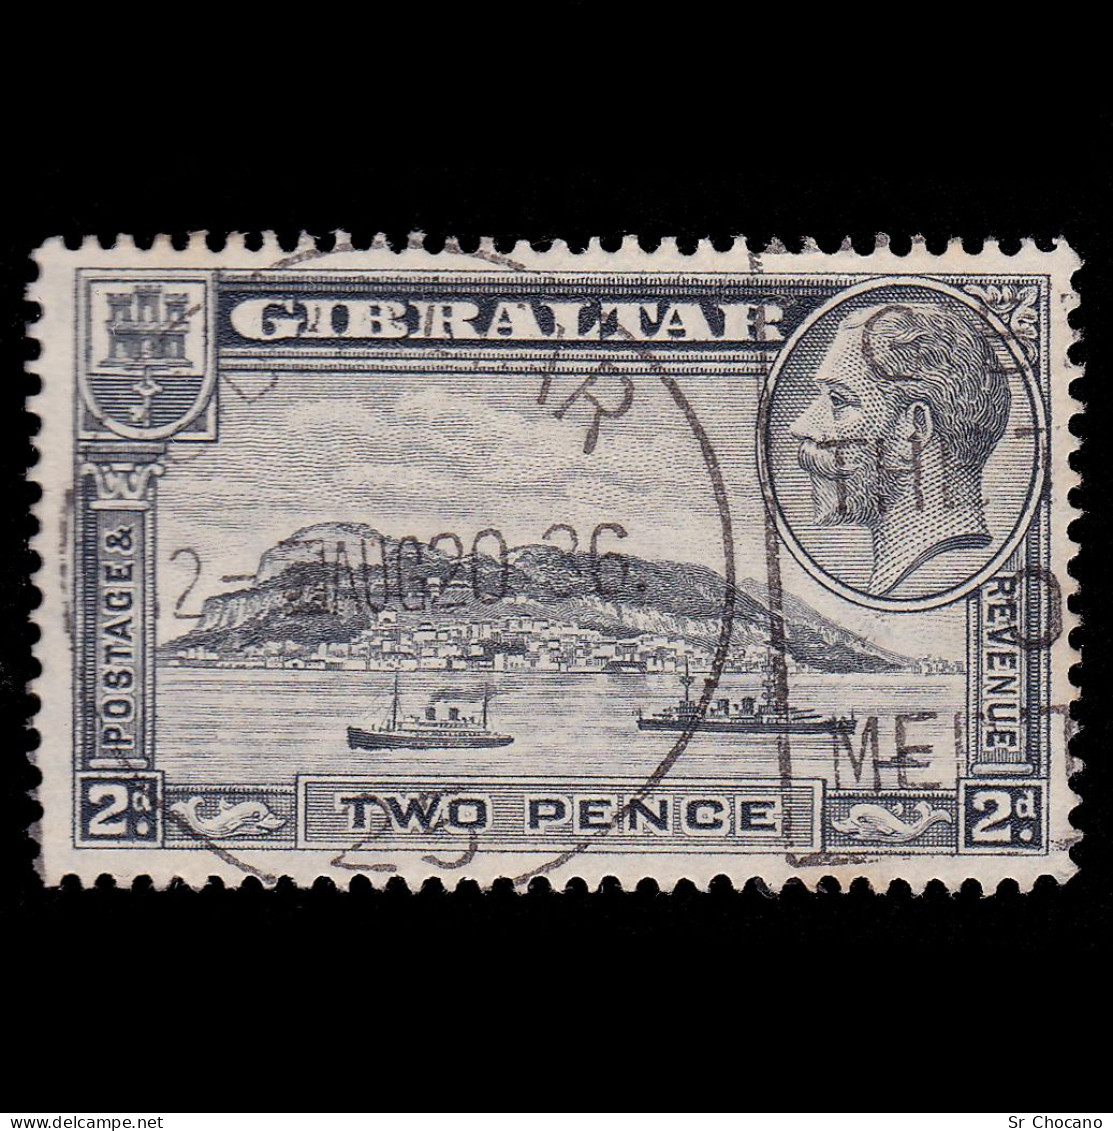 GIBRALTAR STAMP.1932.GV.2d.SG 112.USED.. - Gibraltar